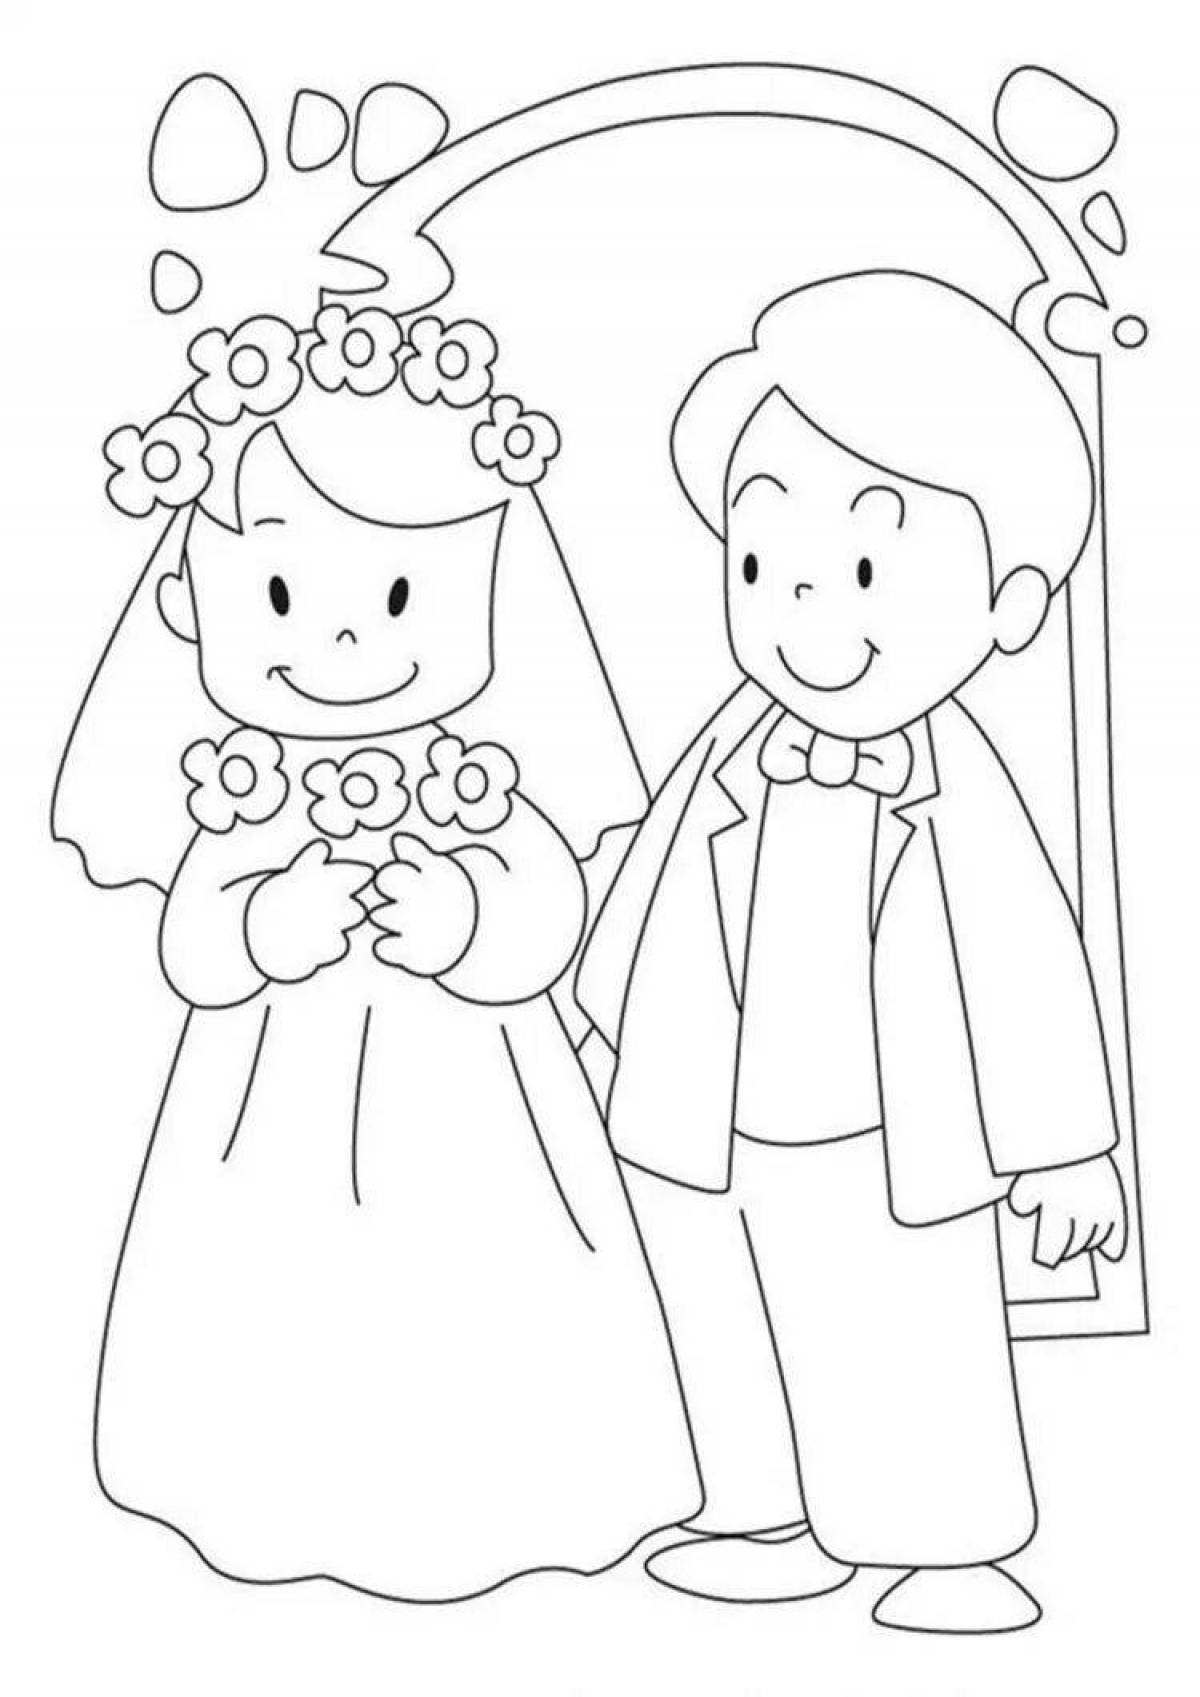 Великолепная раскраска свадьба для детей